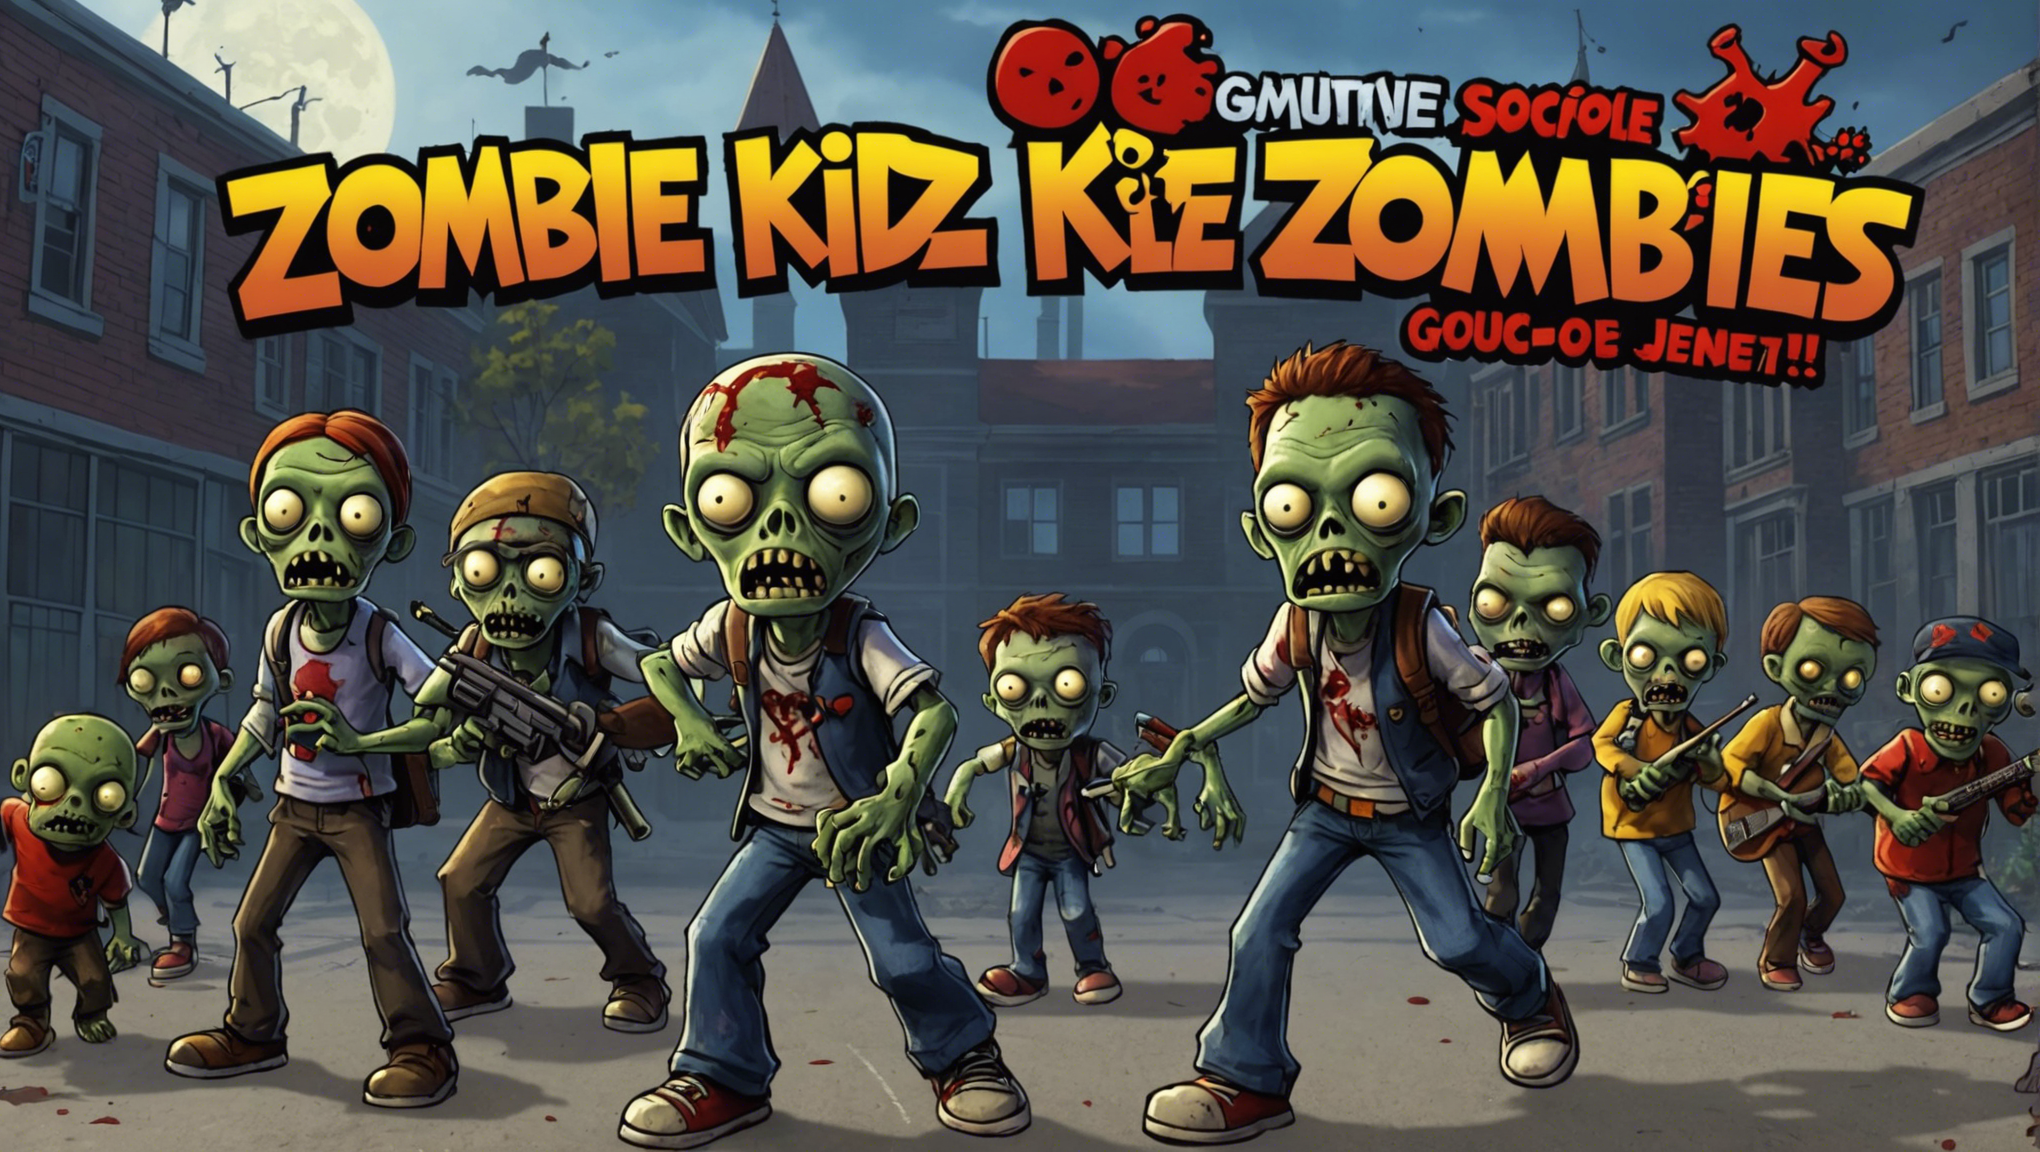 découvrez qui va sauver l'école des zombies avec le jeu de société zombie kidz. rejoignez une équipe de jeunes héros dans une aventure palpitante pour protéger l'école contre l'invasion de zombies. un jeu coopératif passionnant pour toute la famille !